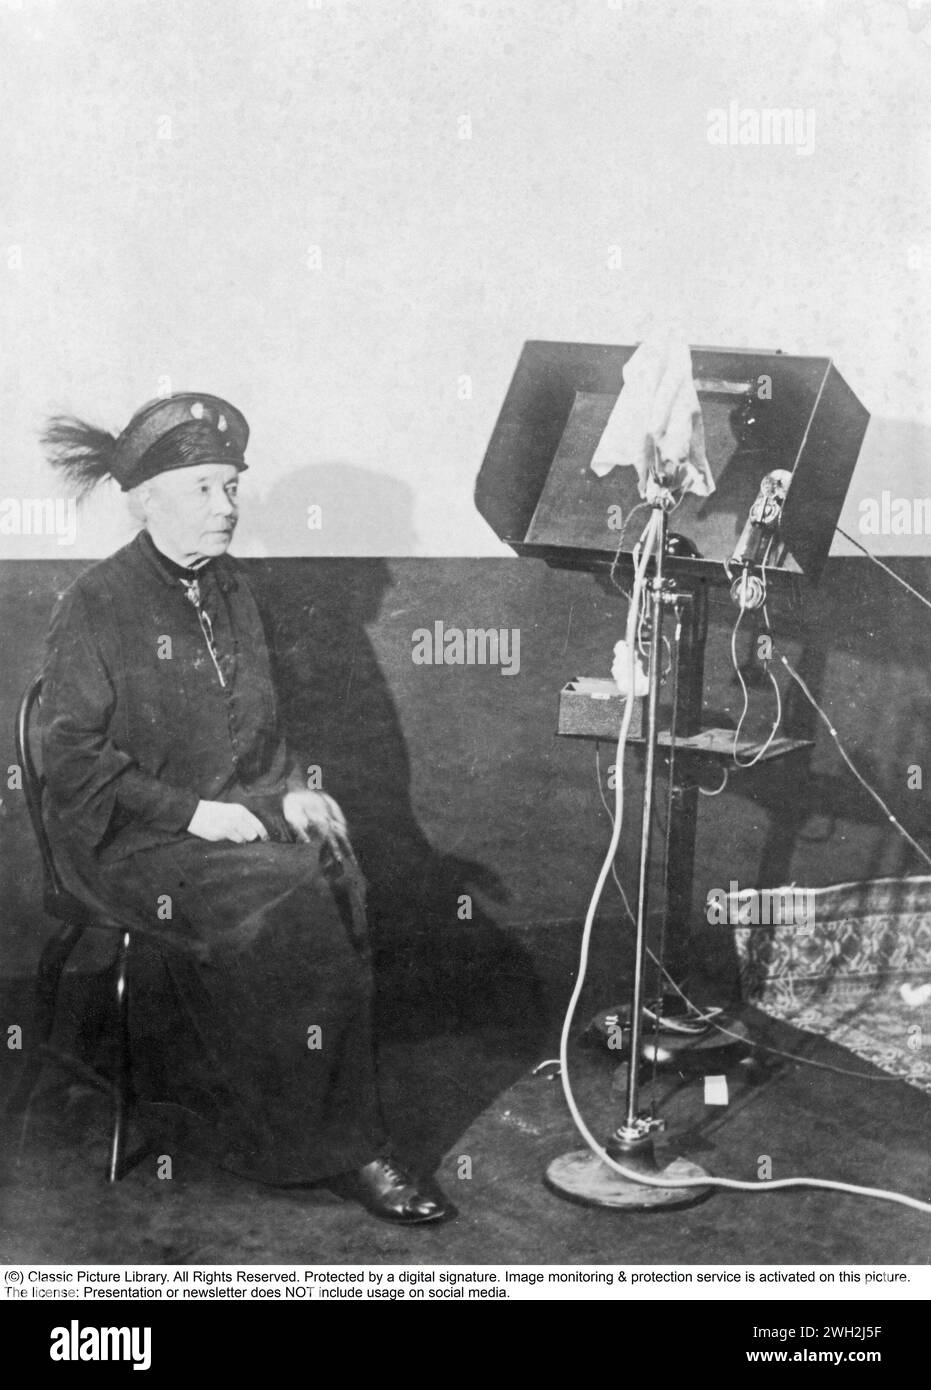 Selma Lagerlöf. 20 novembre 1858 – 16 mars 1940, est un écrivain suédois. Elle publie son premier roman, Gösta Berling's Saga, à l'âge de 33 ans. Elle a été la première femme à remporter le prix Nobel de littérature, qui lui a été décerné en 1909. En outre, elle a été la première femme à être membre de l'Académie suédoise en 1914. Photographié lors de l'enregistrement de quelque chose dans un studio de radio 1930. Banque D'Images